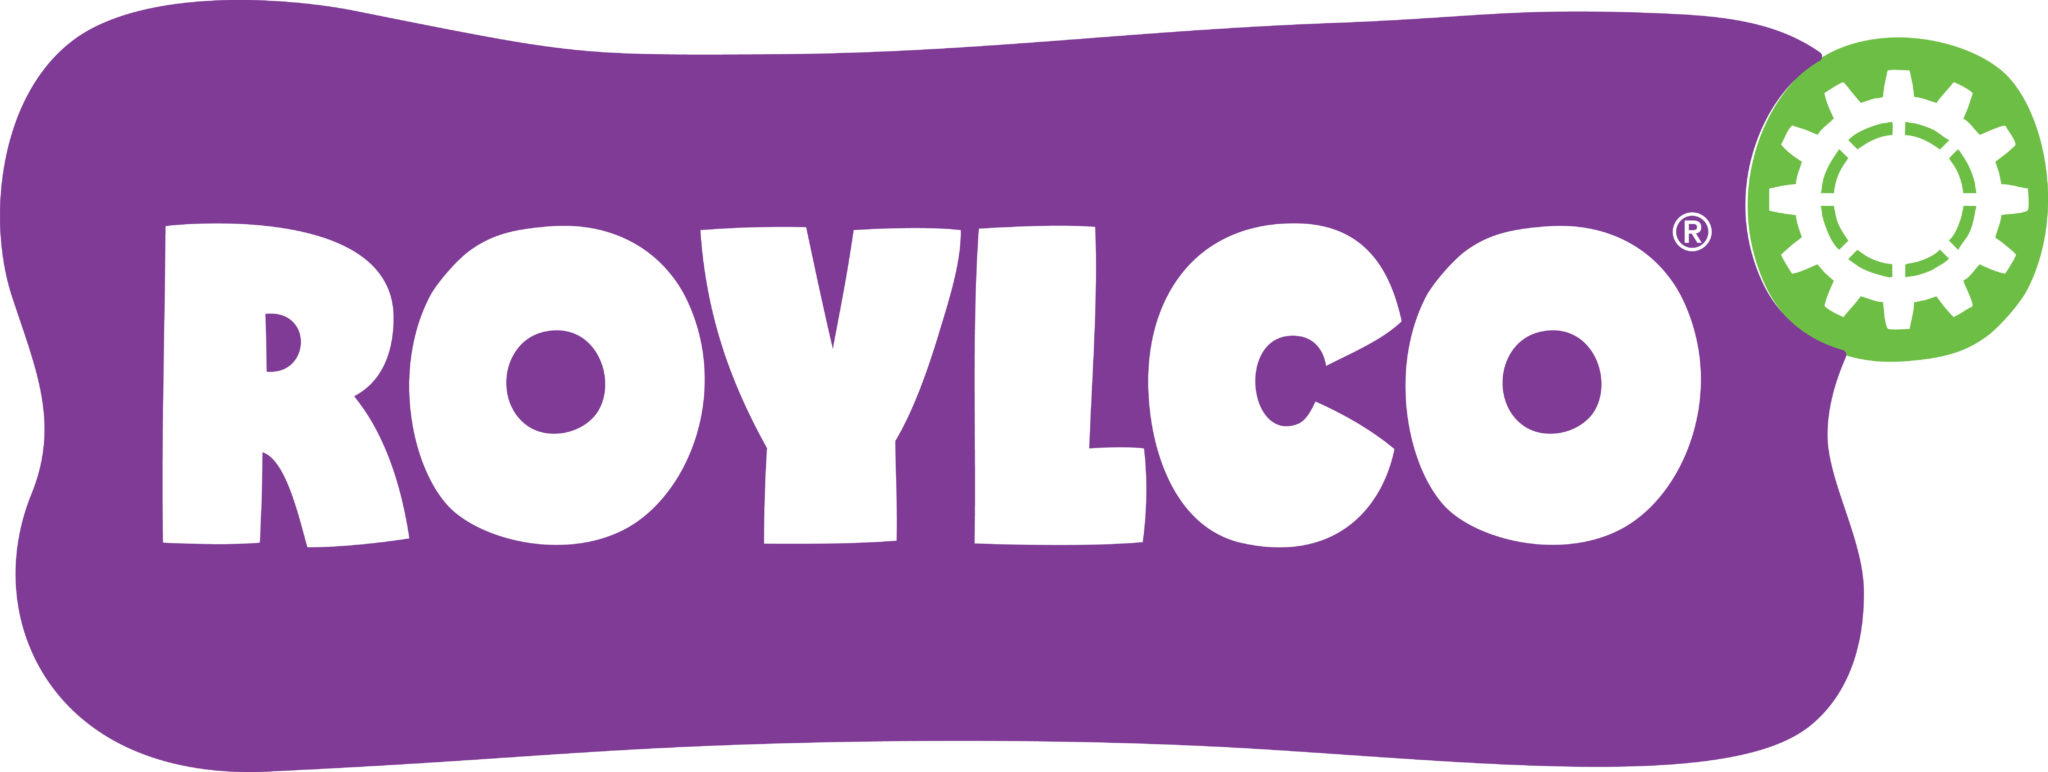 Roylco